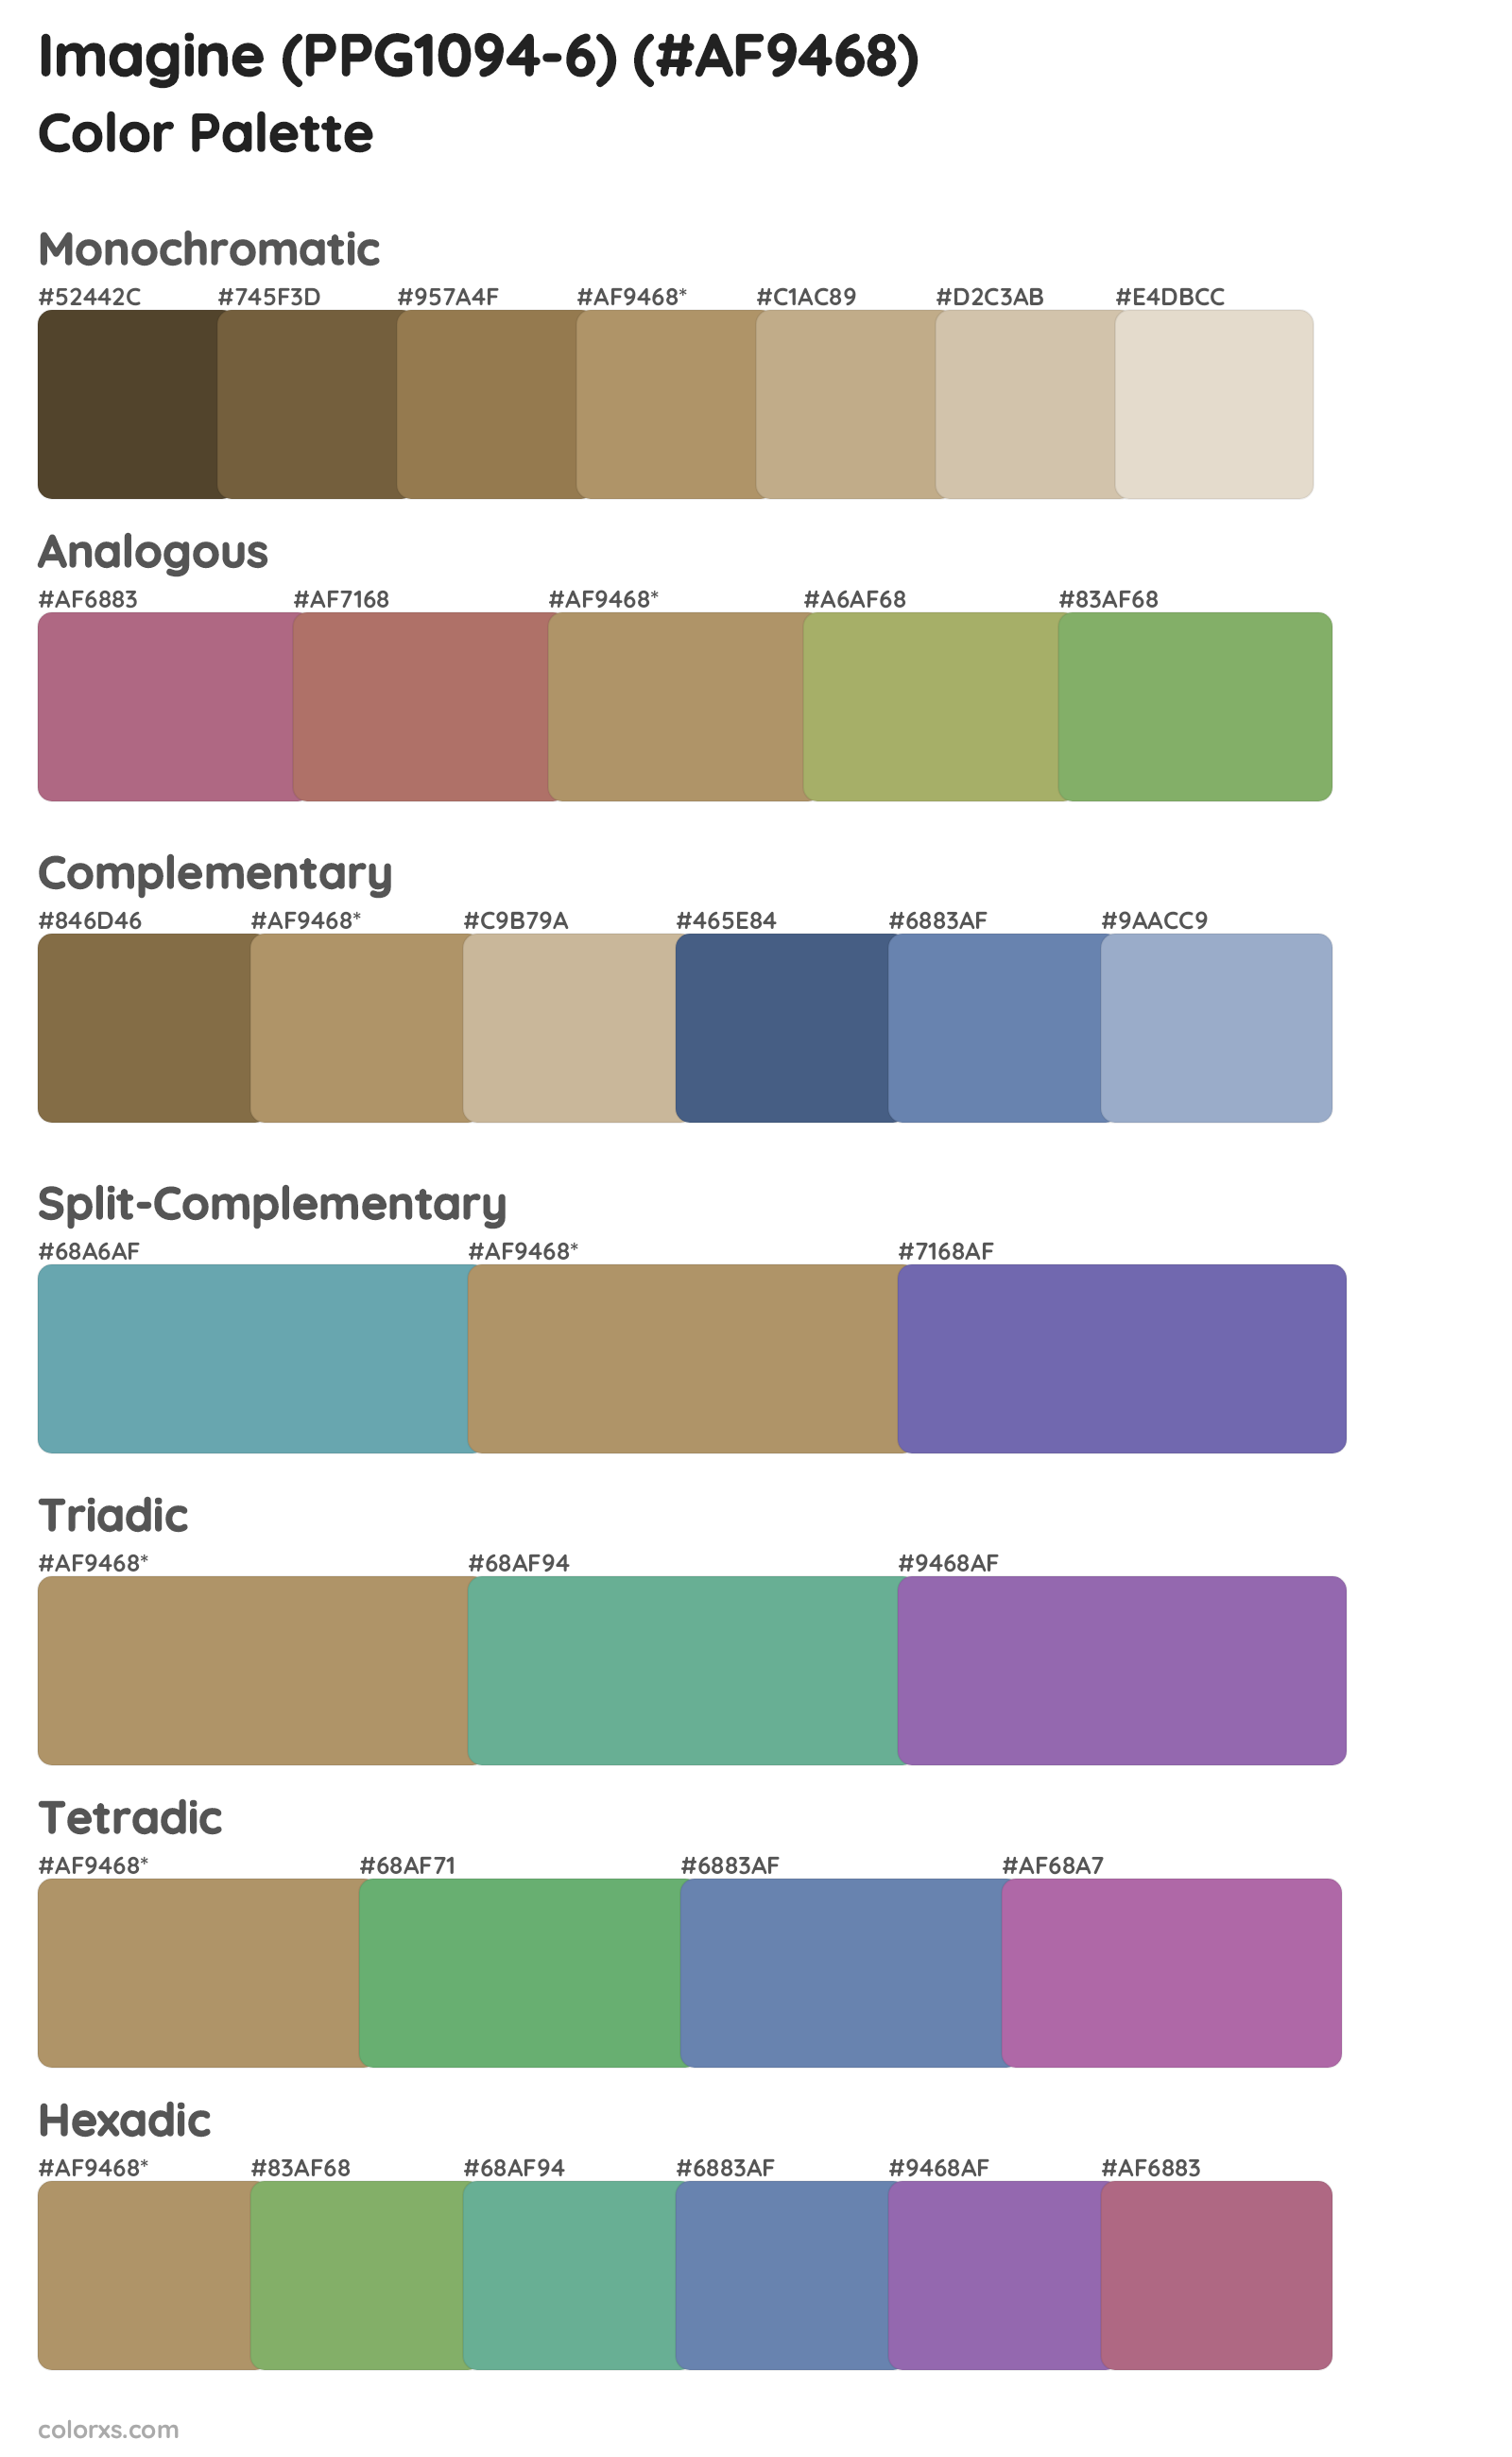 Imagine (PPG1094-6) Color Scheme Palettes